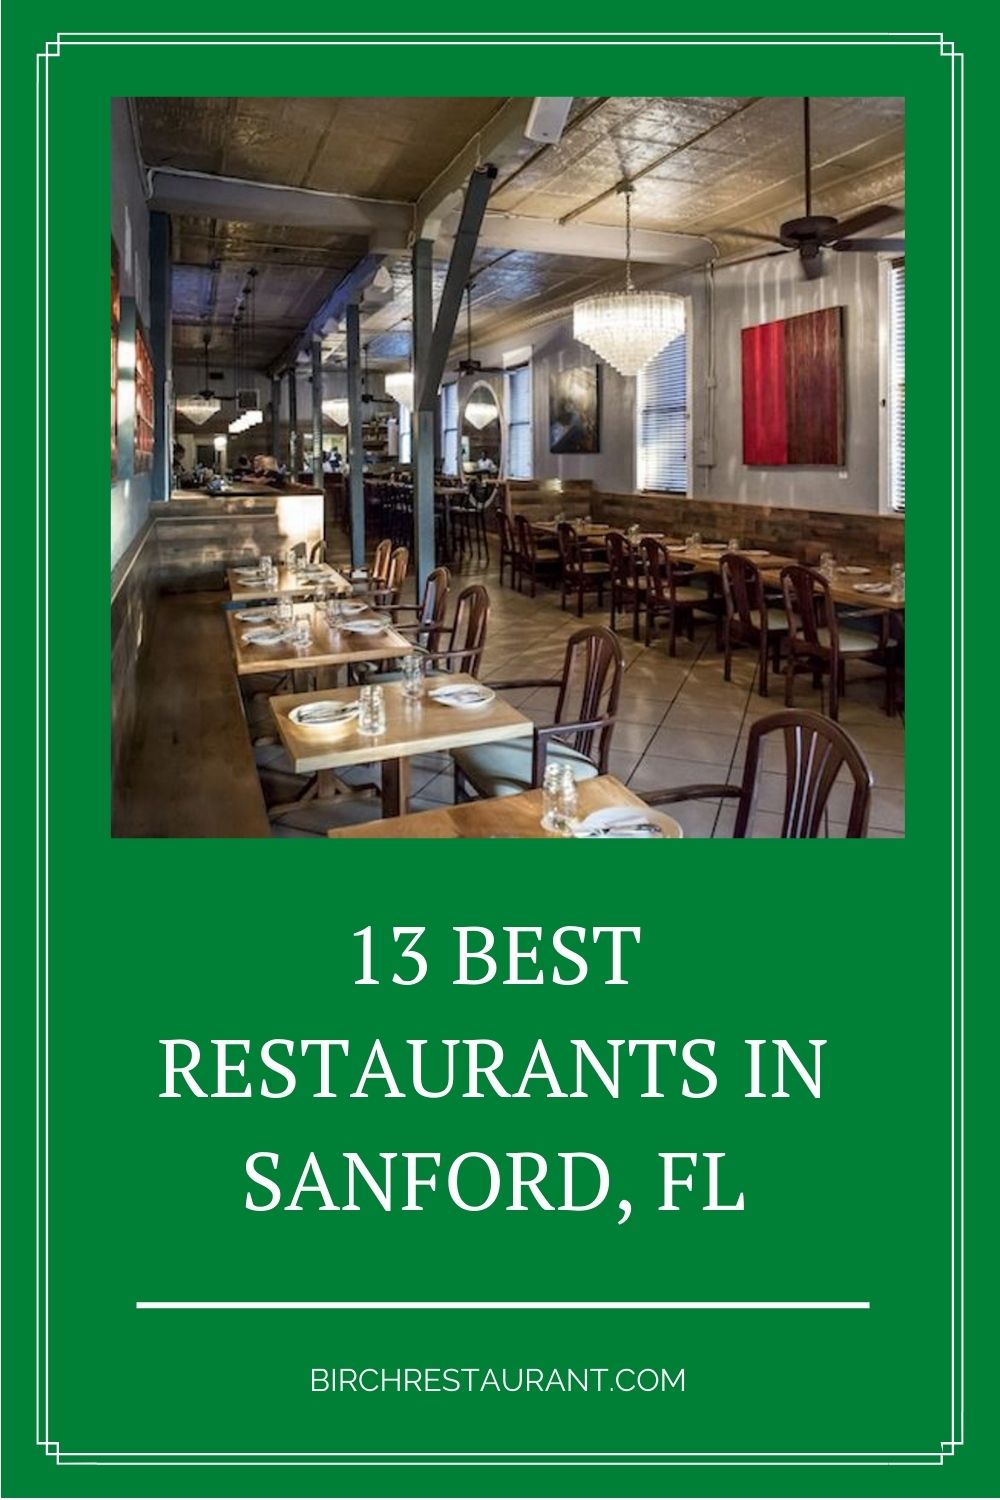 Best Restaurants in Sanford